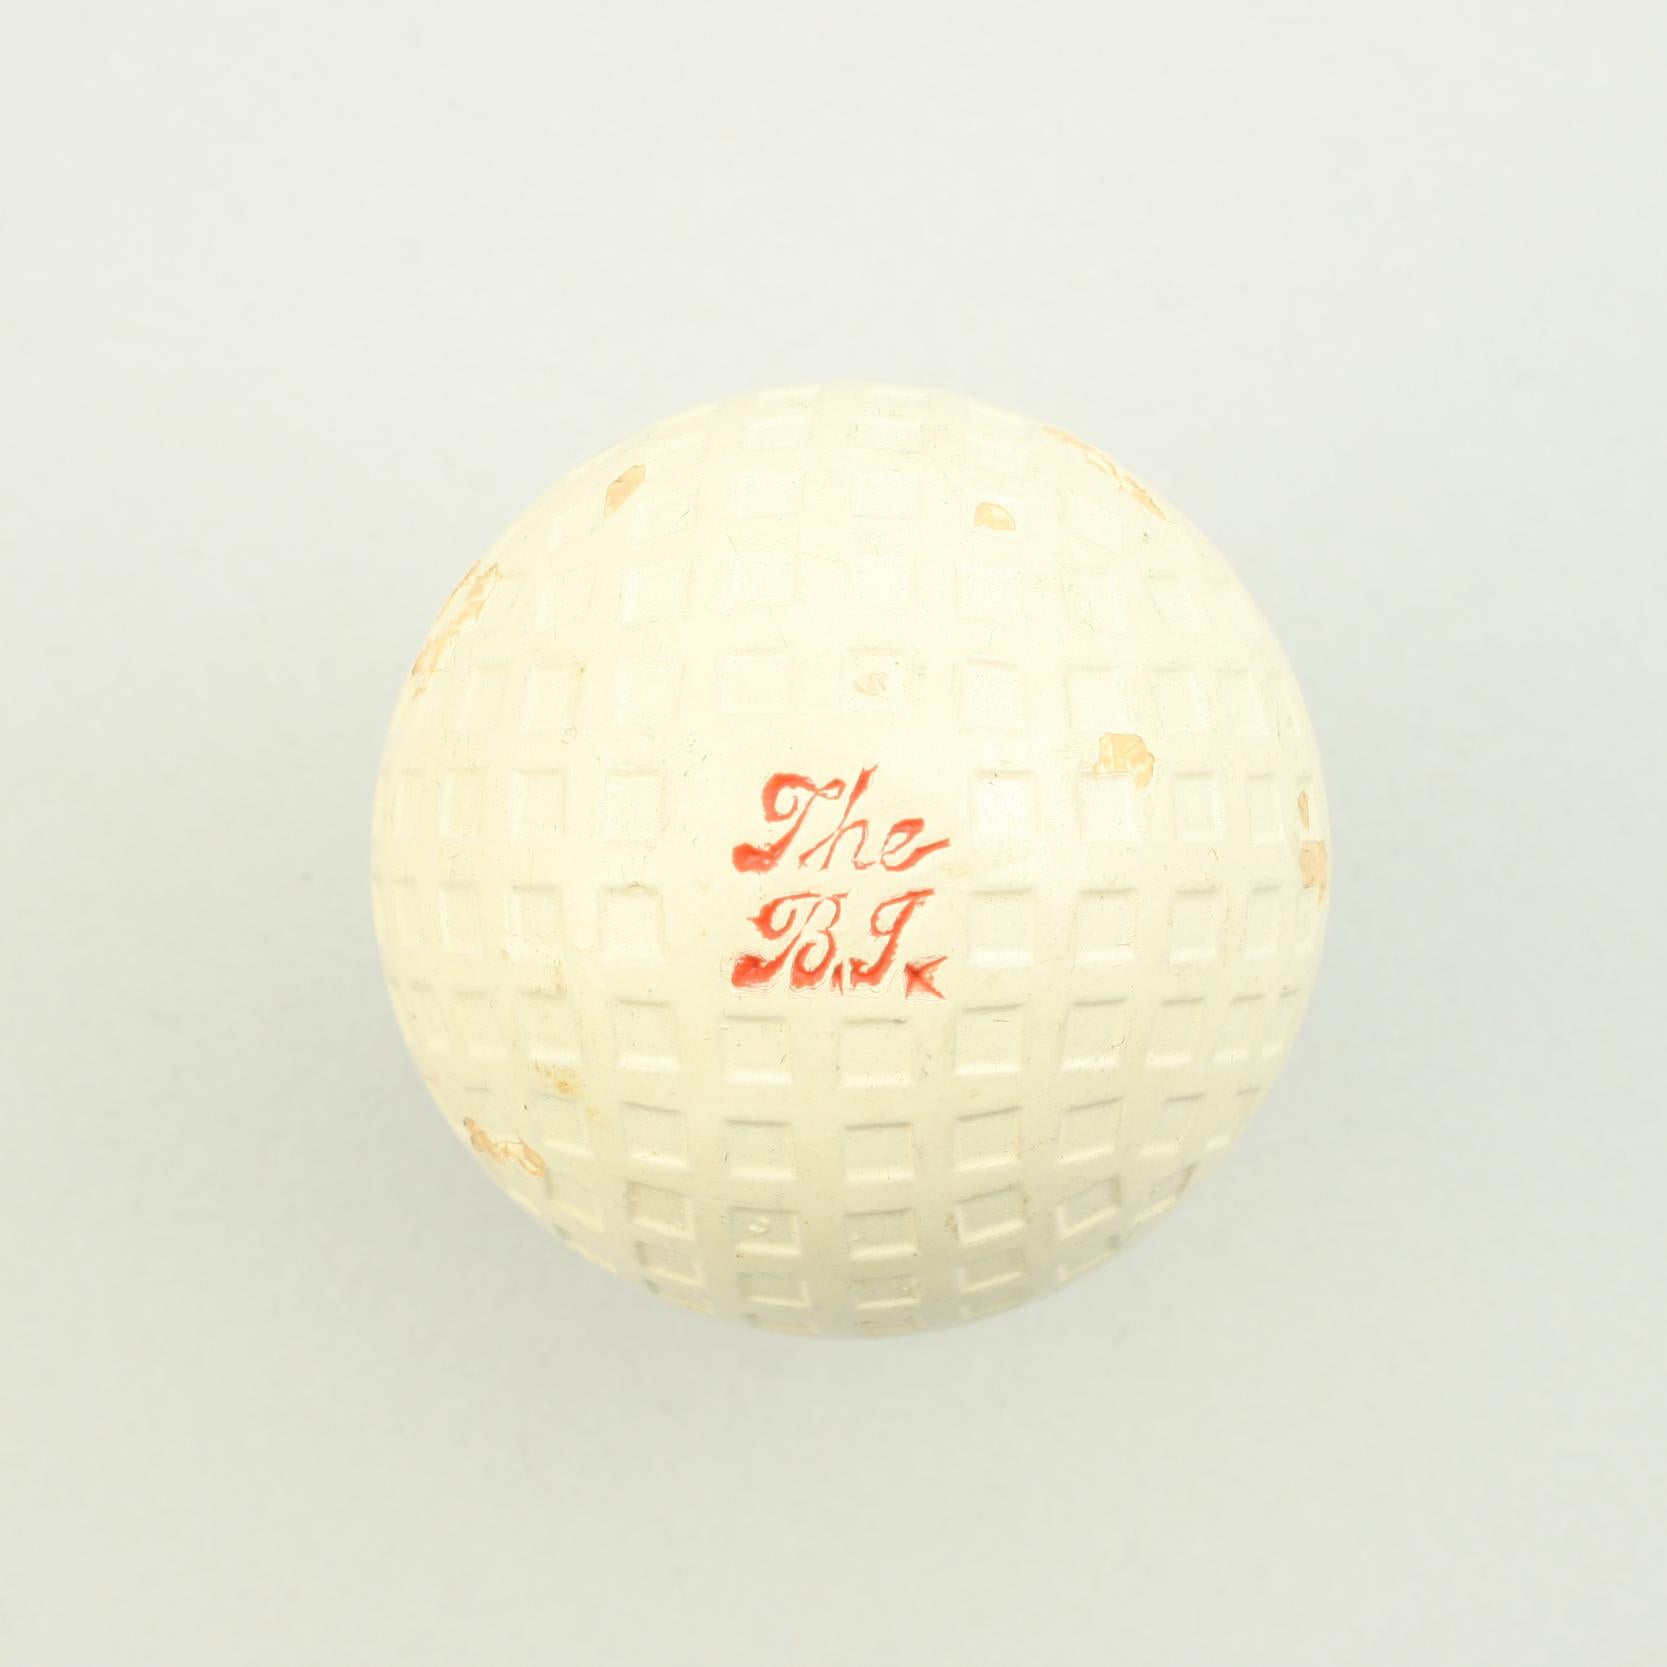 Antike Mint Zustand Mesh Patterned 'B.I' Golfball.

Dies ist ein außergewöhnlicher Golfball in nahezu neuwertigem Zustand, nie benutzt und immer noch mit seiner Originalverpackung. Der Golfball mit Netz- oder Gittermuster aus dem Jahr 1910 wurde